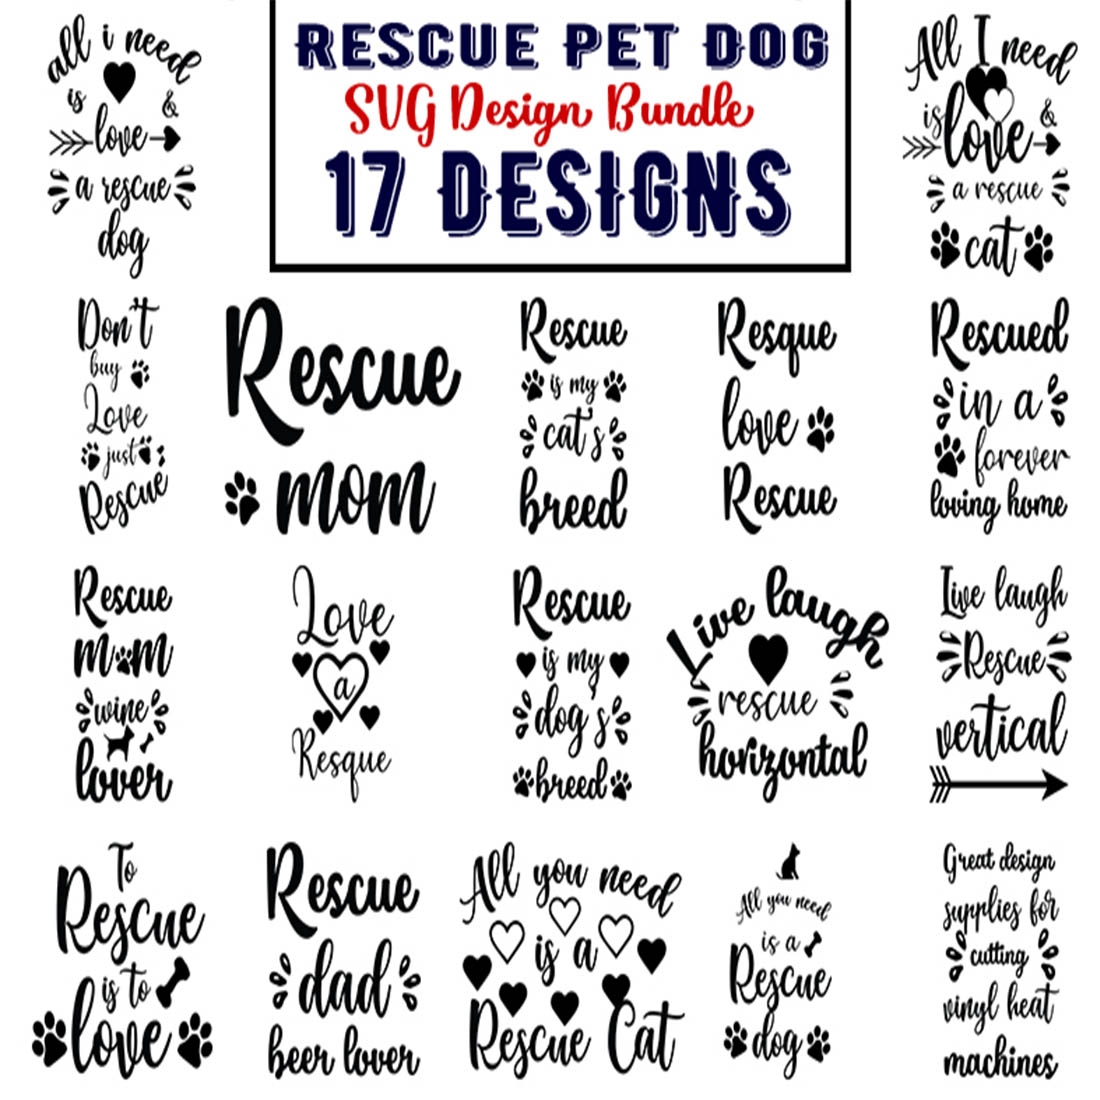 Rescue Pet Dog Svg Bundle preview image.